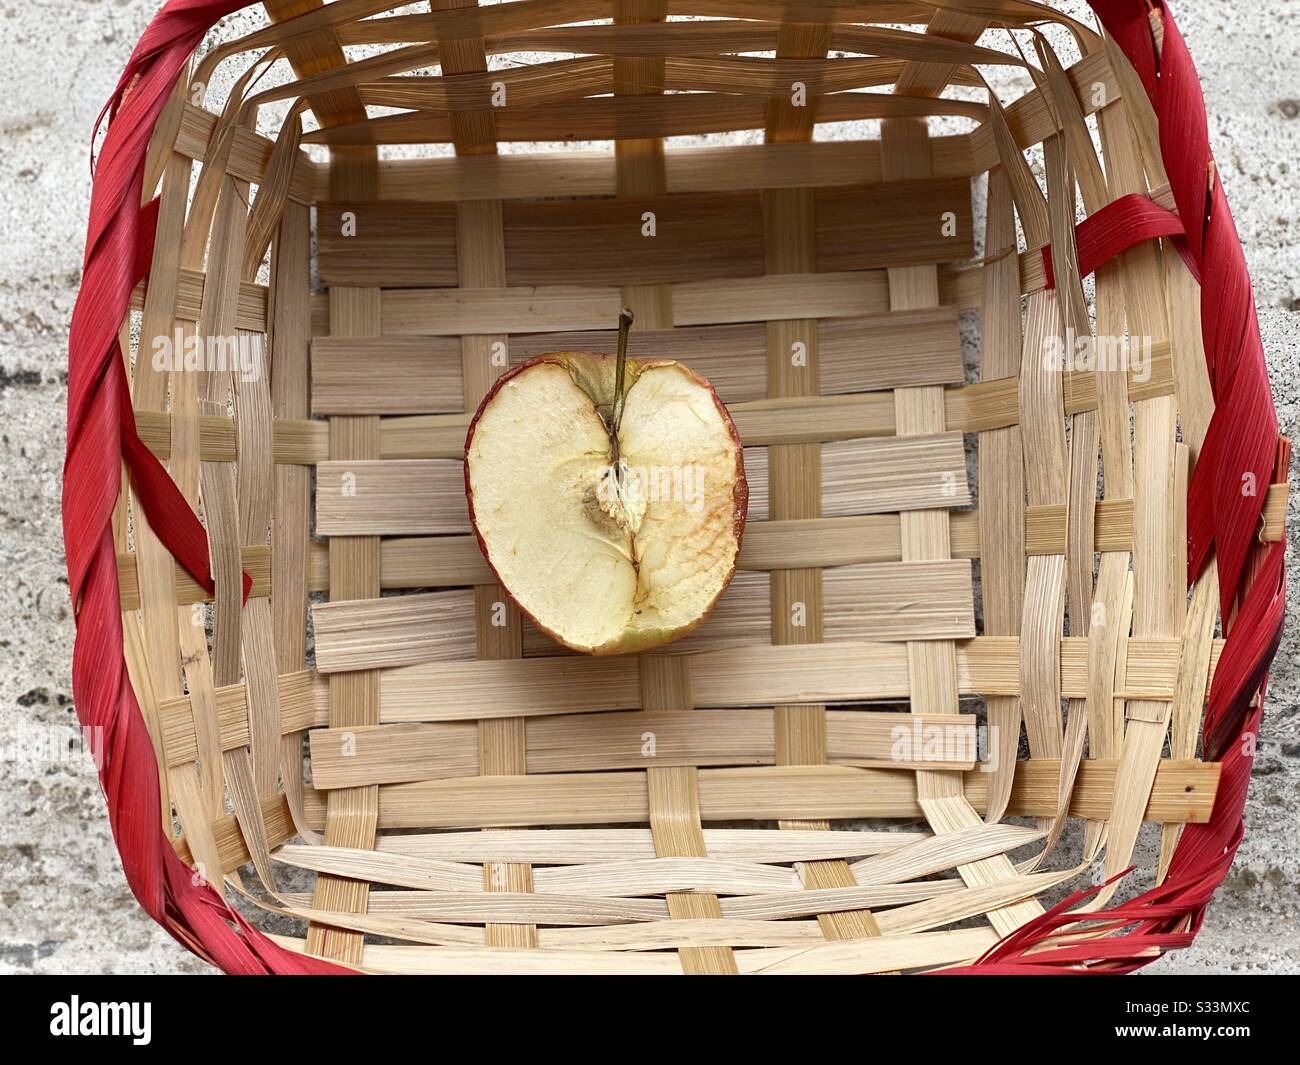 Mitad de manzana marchitada en una cesta de mimbre Foto de stock